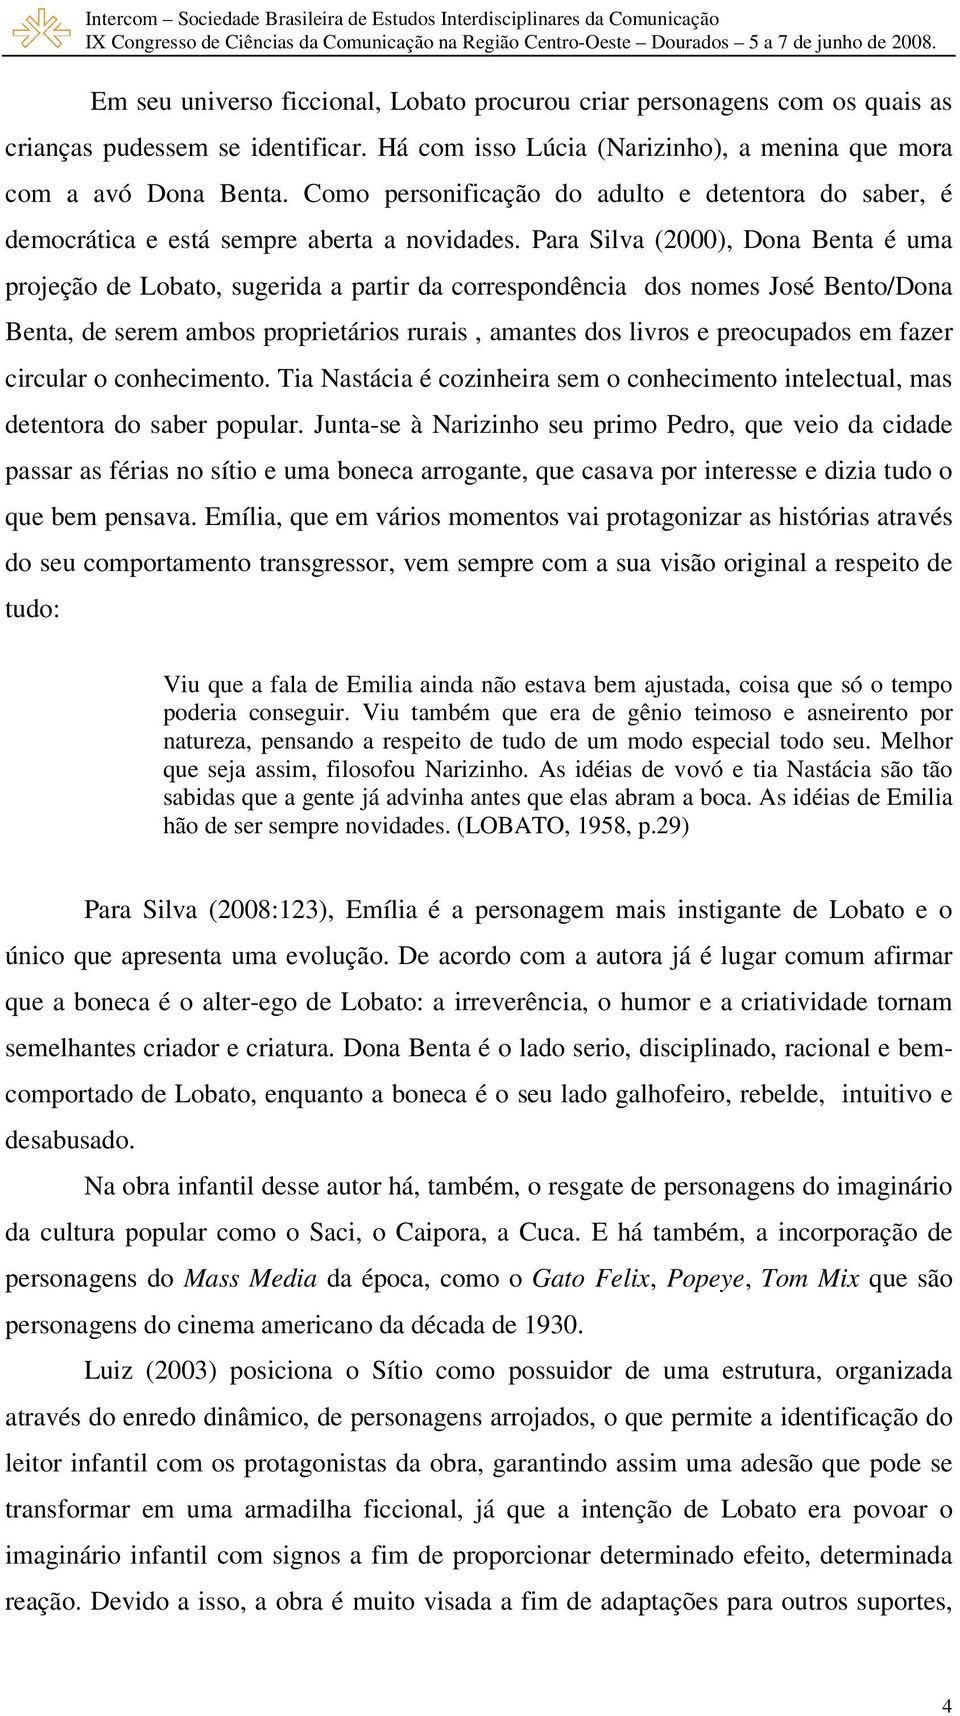 Para Silva (2000), Dona Benta é uma projeção de Lobato, sugerida a partir da correspondência dos nomes José Bento/Dona Benta, de serem ambos proprietários rurais, amantes dos livros e preocupados em